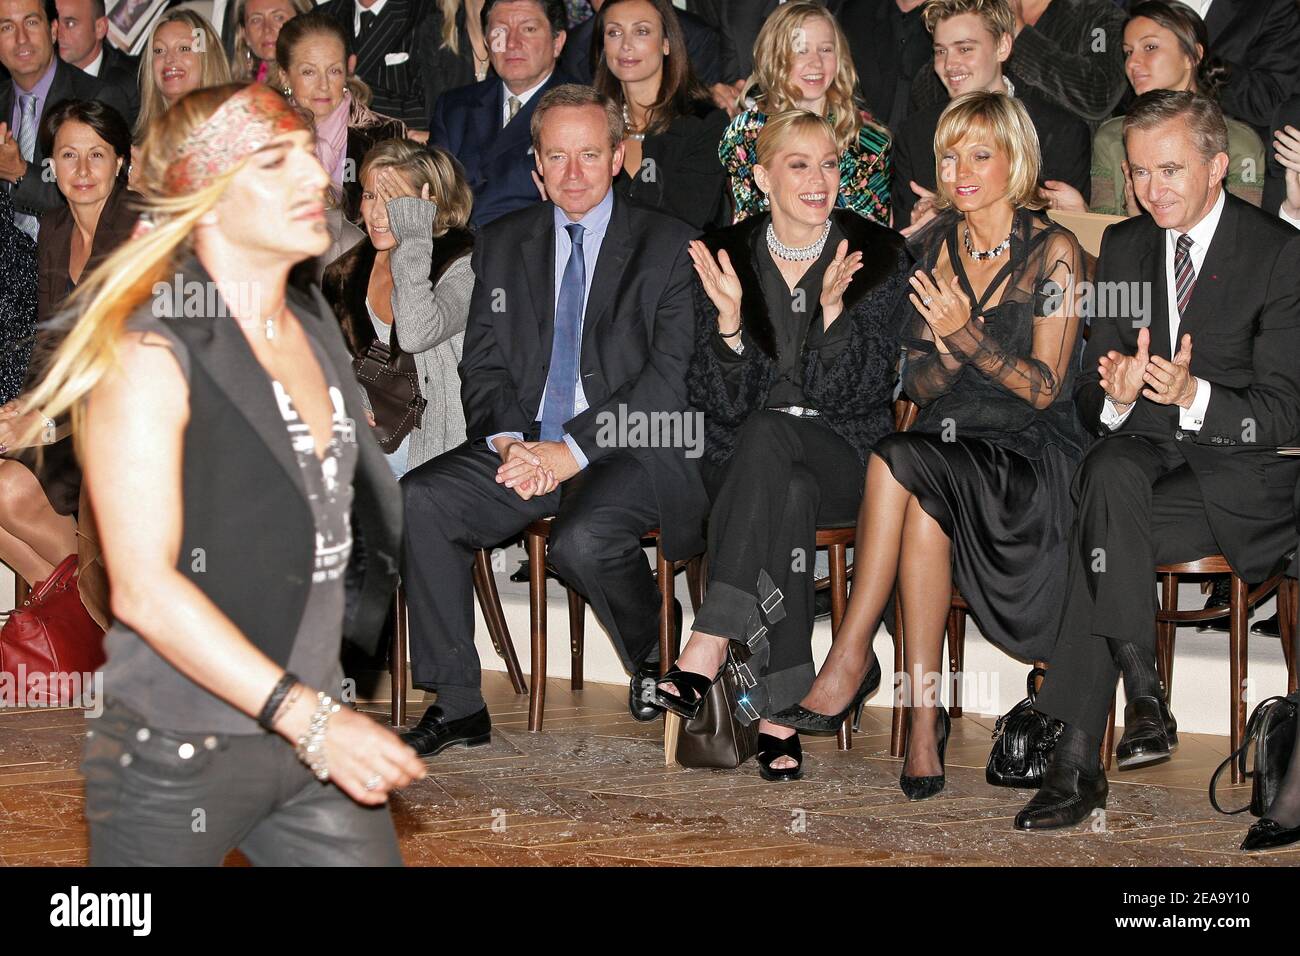 Superstar Scarlett Johansson, LVMH CEO Bernard Arnault' son